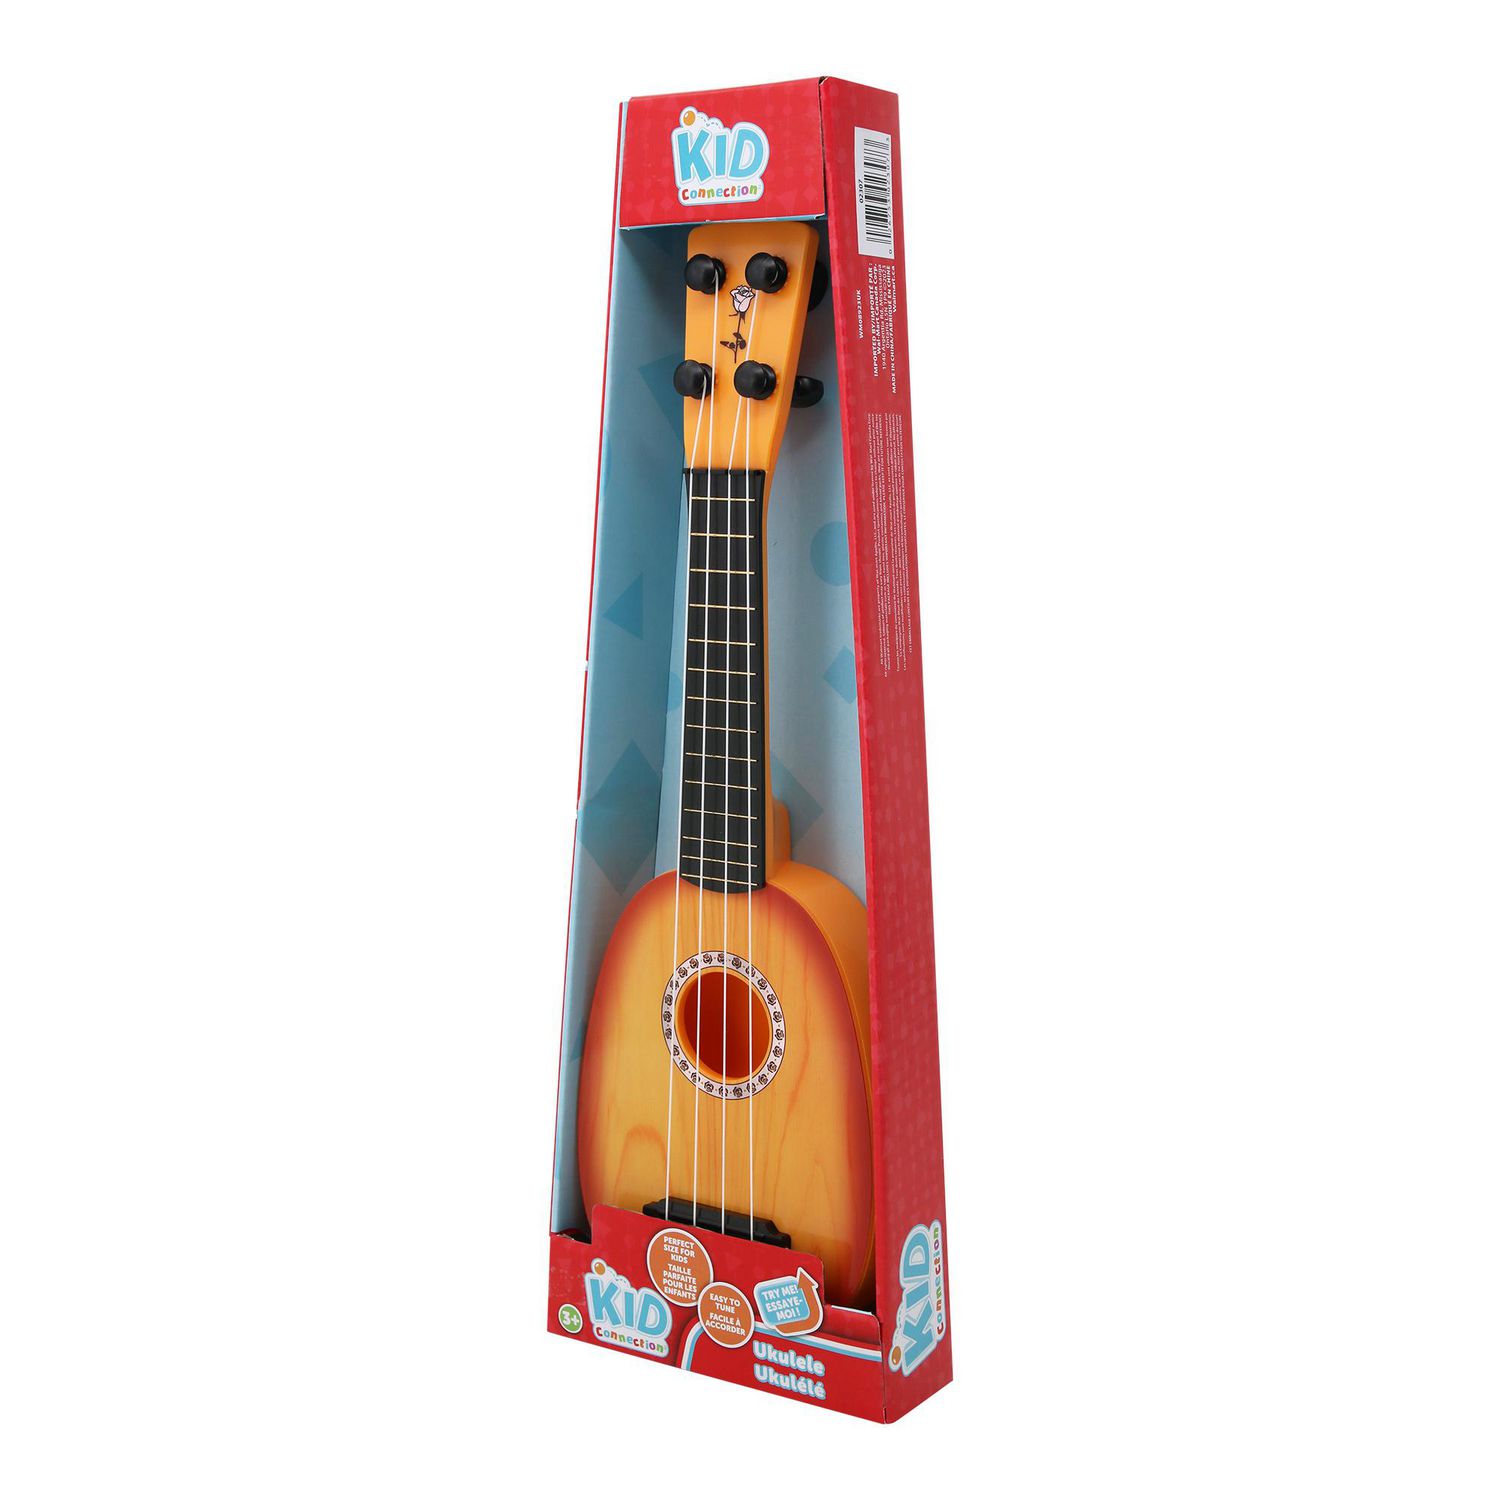 Ukulélé jouet pour enfants Mini instrument de musique en plastique